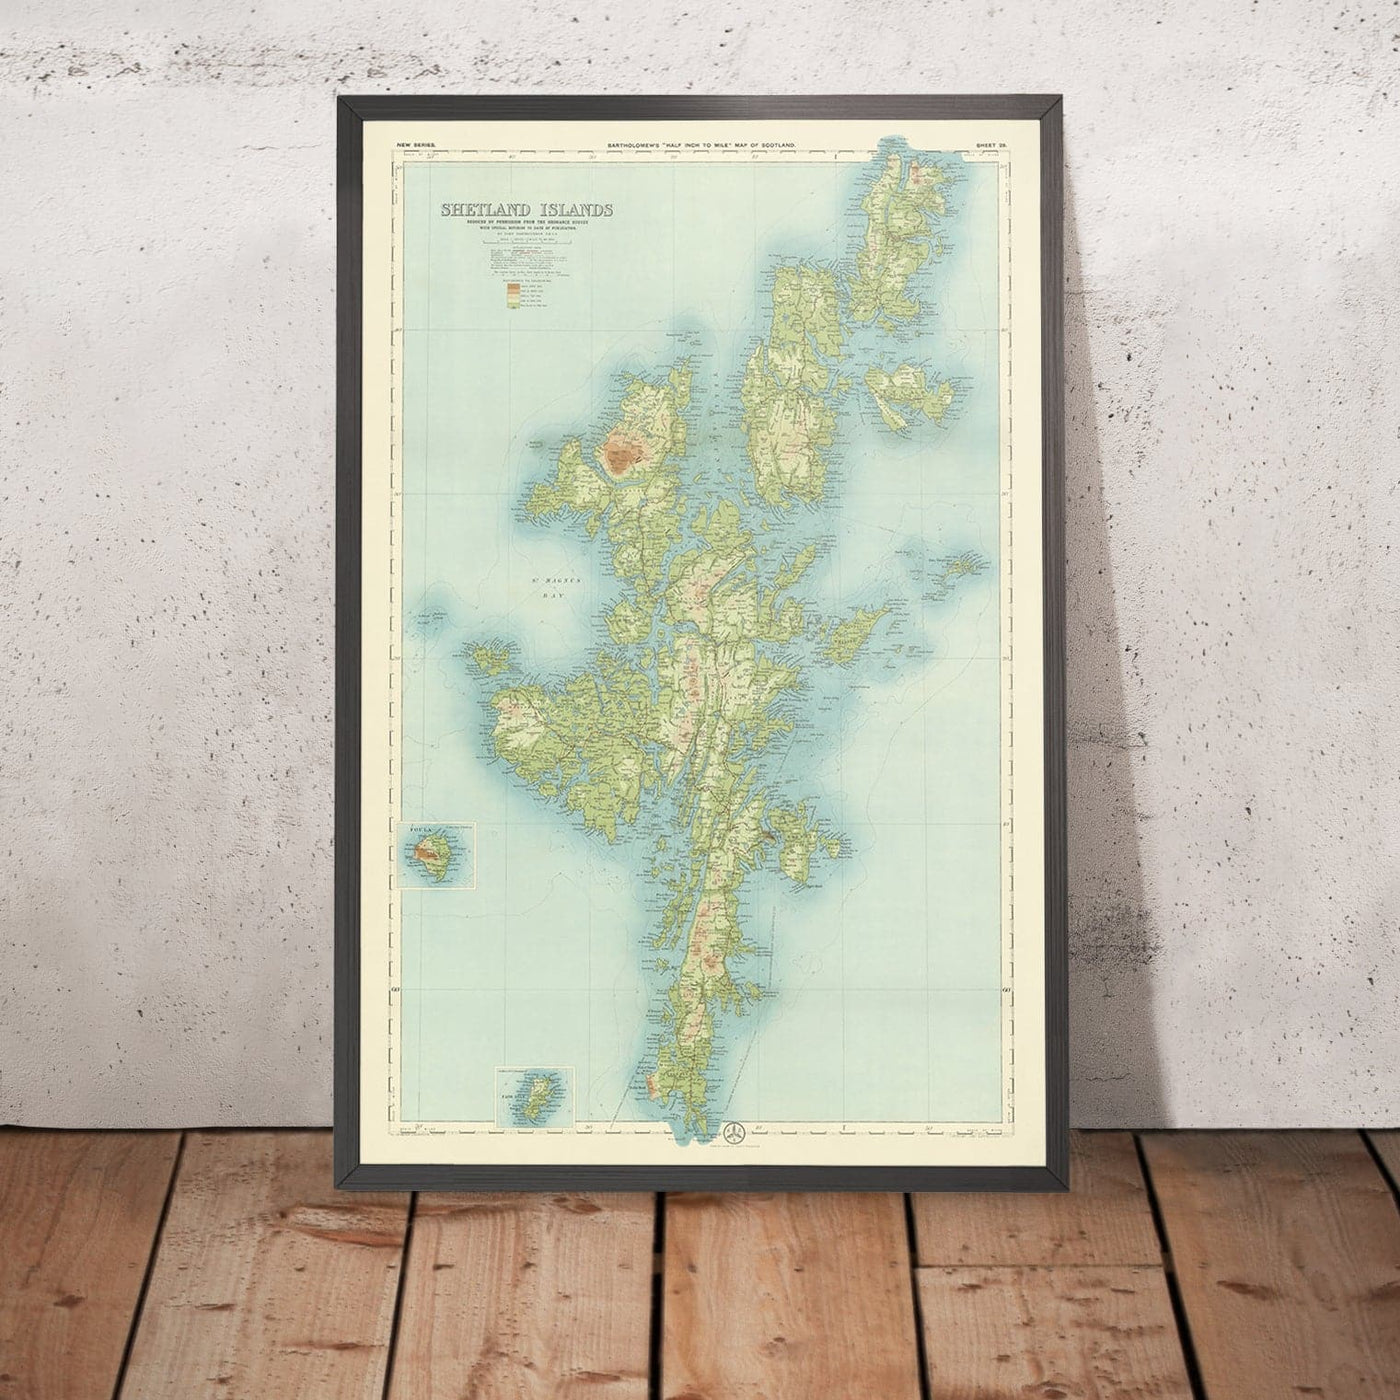 Antiguo mapa OS de las Islas Shetland por Bartolomé, 1901: Lerwick, Ronas Hill, Sullom Voe, Jarlshof, Fair Isle, Foula